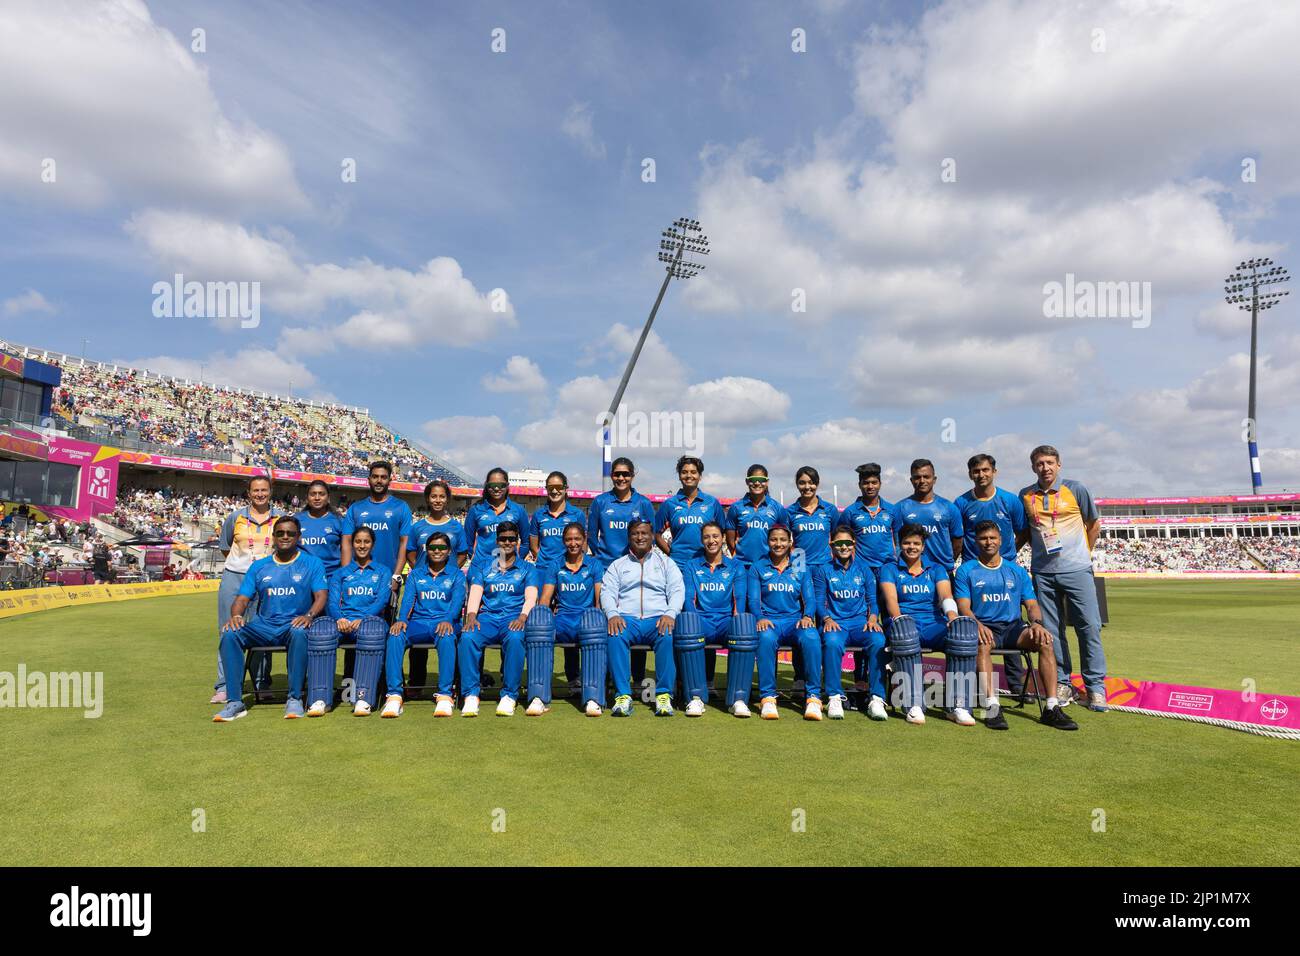 06-8-22 - l’équipe de cricket indienne féminine au terrain de cricket d’Edgbaston pendant les Jeux du Commonwealth de Birmingham 2022 à Birmingham. Banque D'Images